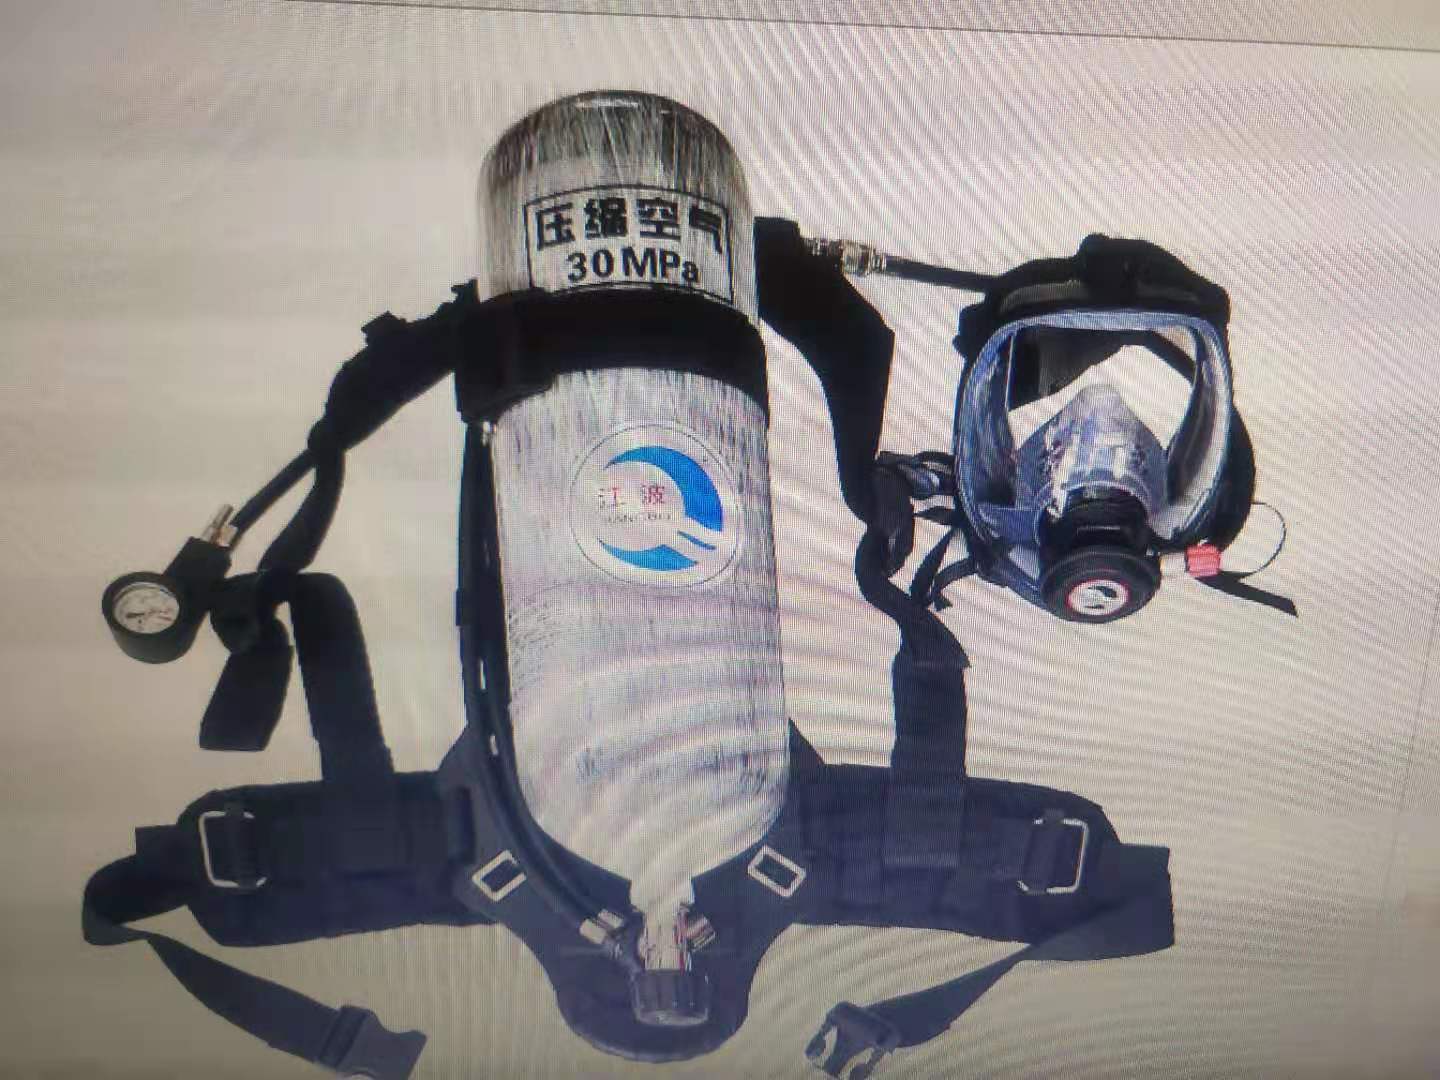 空气呼吸机江苏正压式空气呼吸器价格 消防专用空气呼吸机批发 自救呼吸器厂家